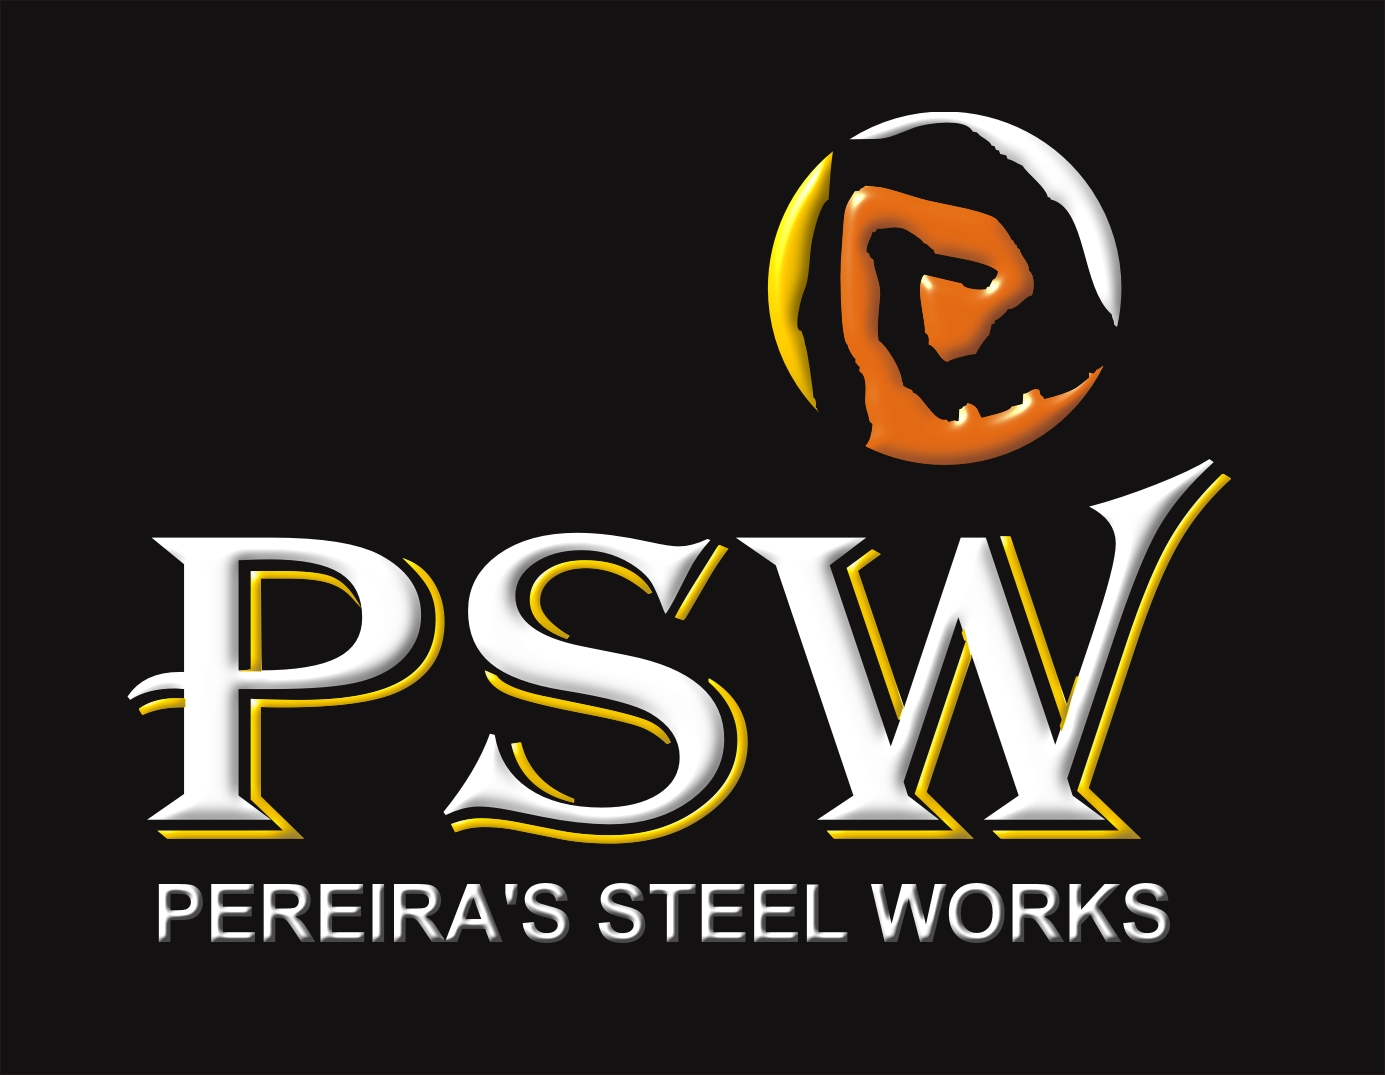 Pereira's Steel Works cc logo